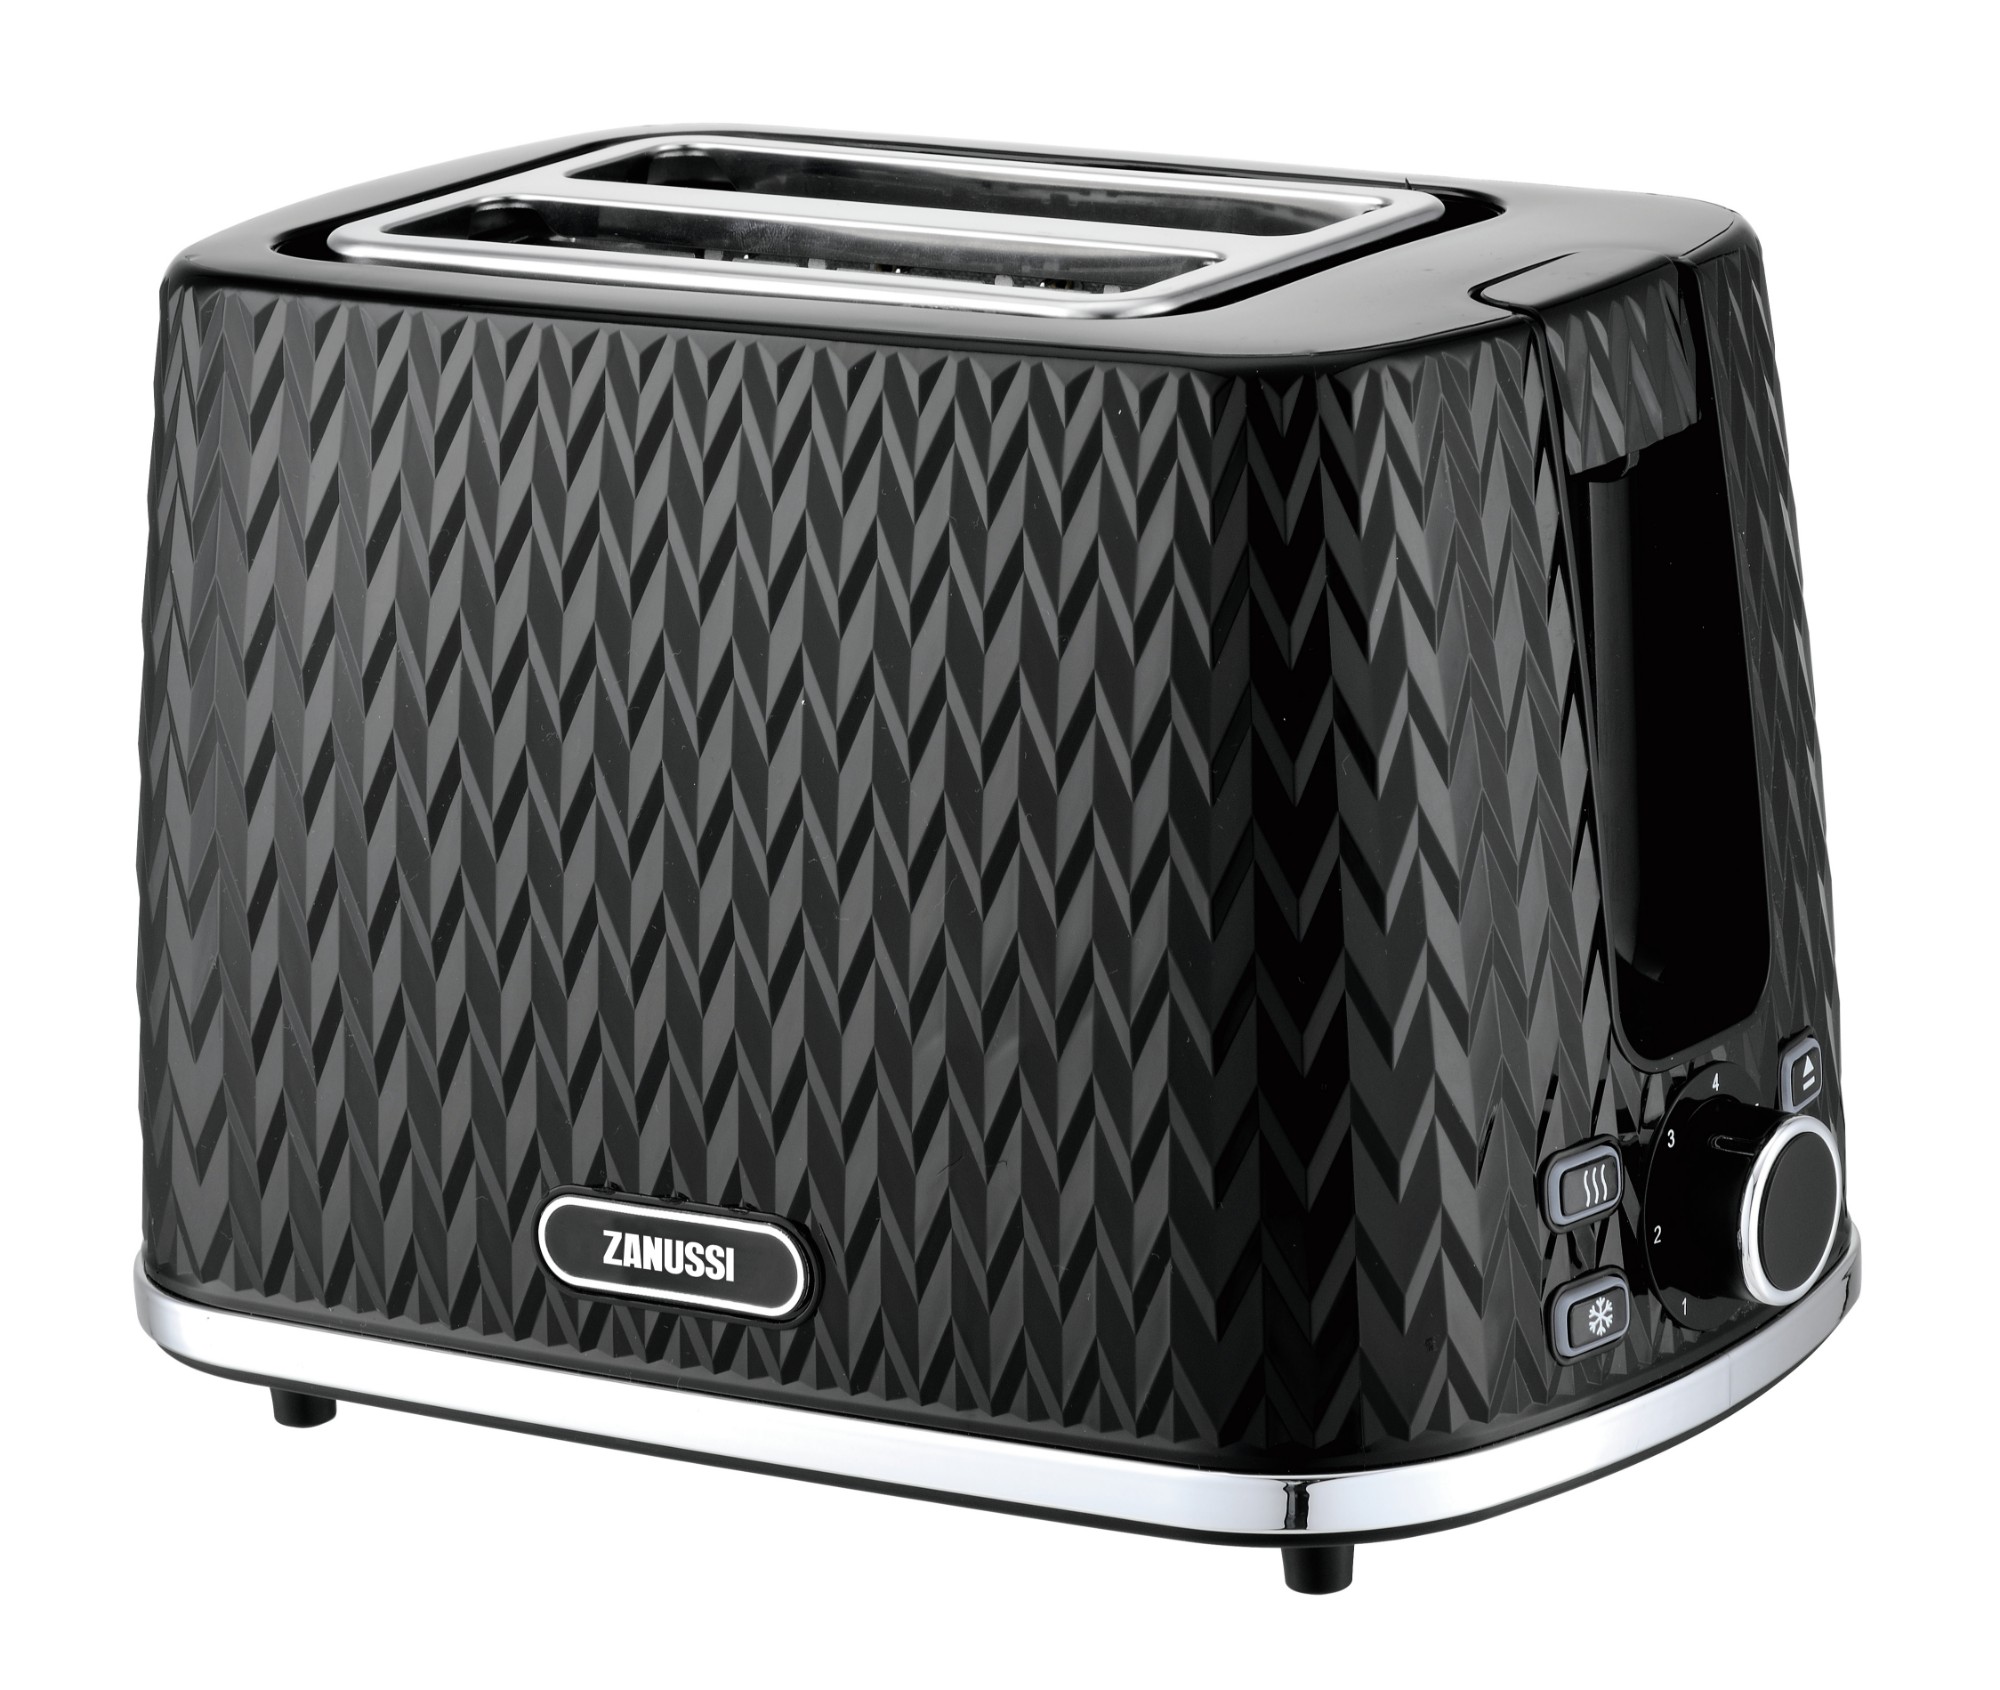 Zanussi ZST-6550-BK toaster 2 slice(s) 930 W Black